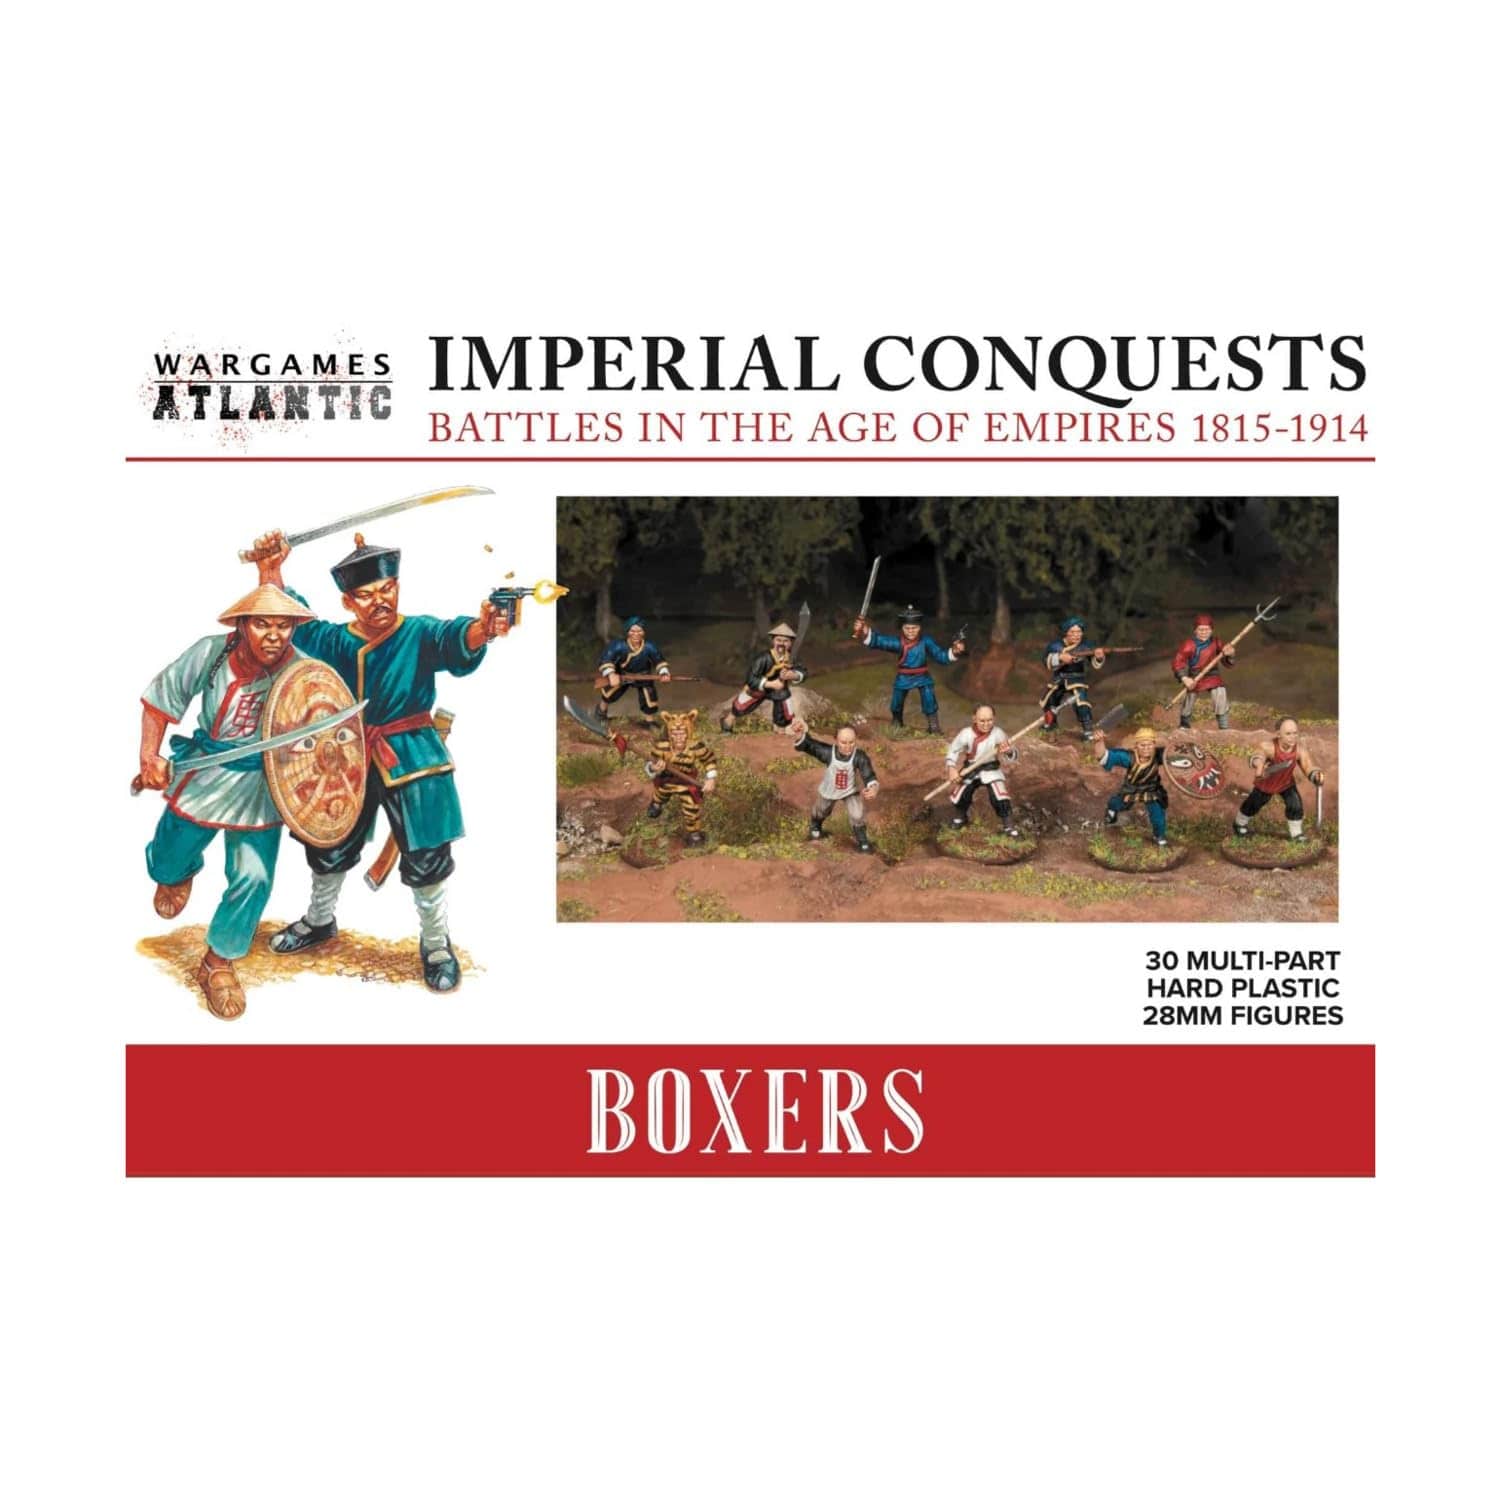 Wargames Atlantic Miniatures Games Wargames Atlantic Imperial Conquests: Boxers